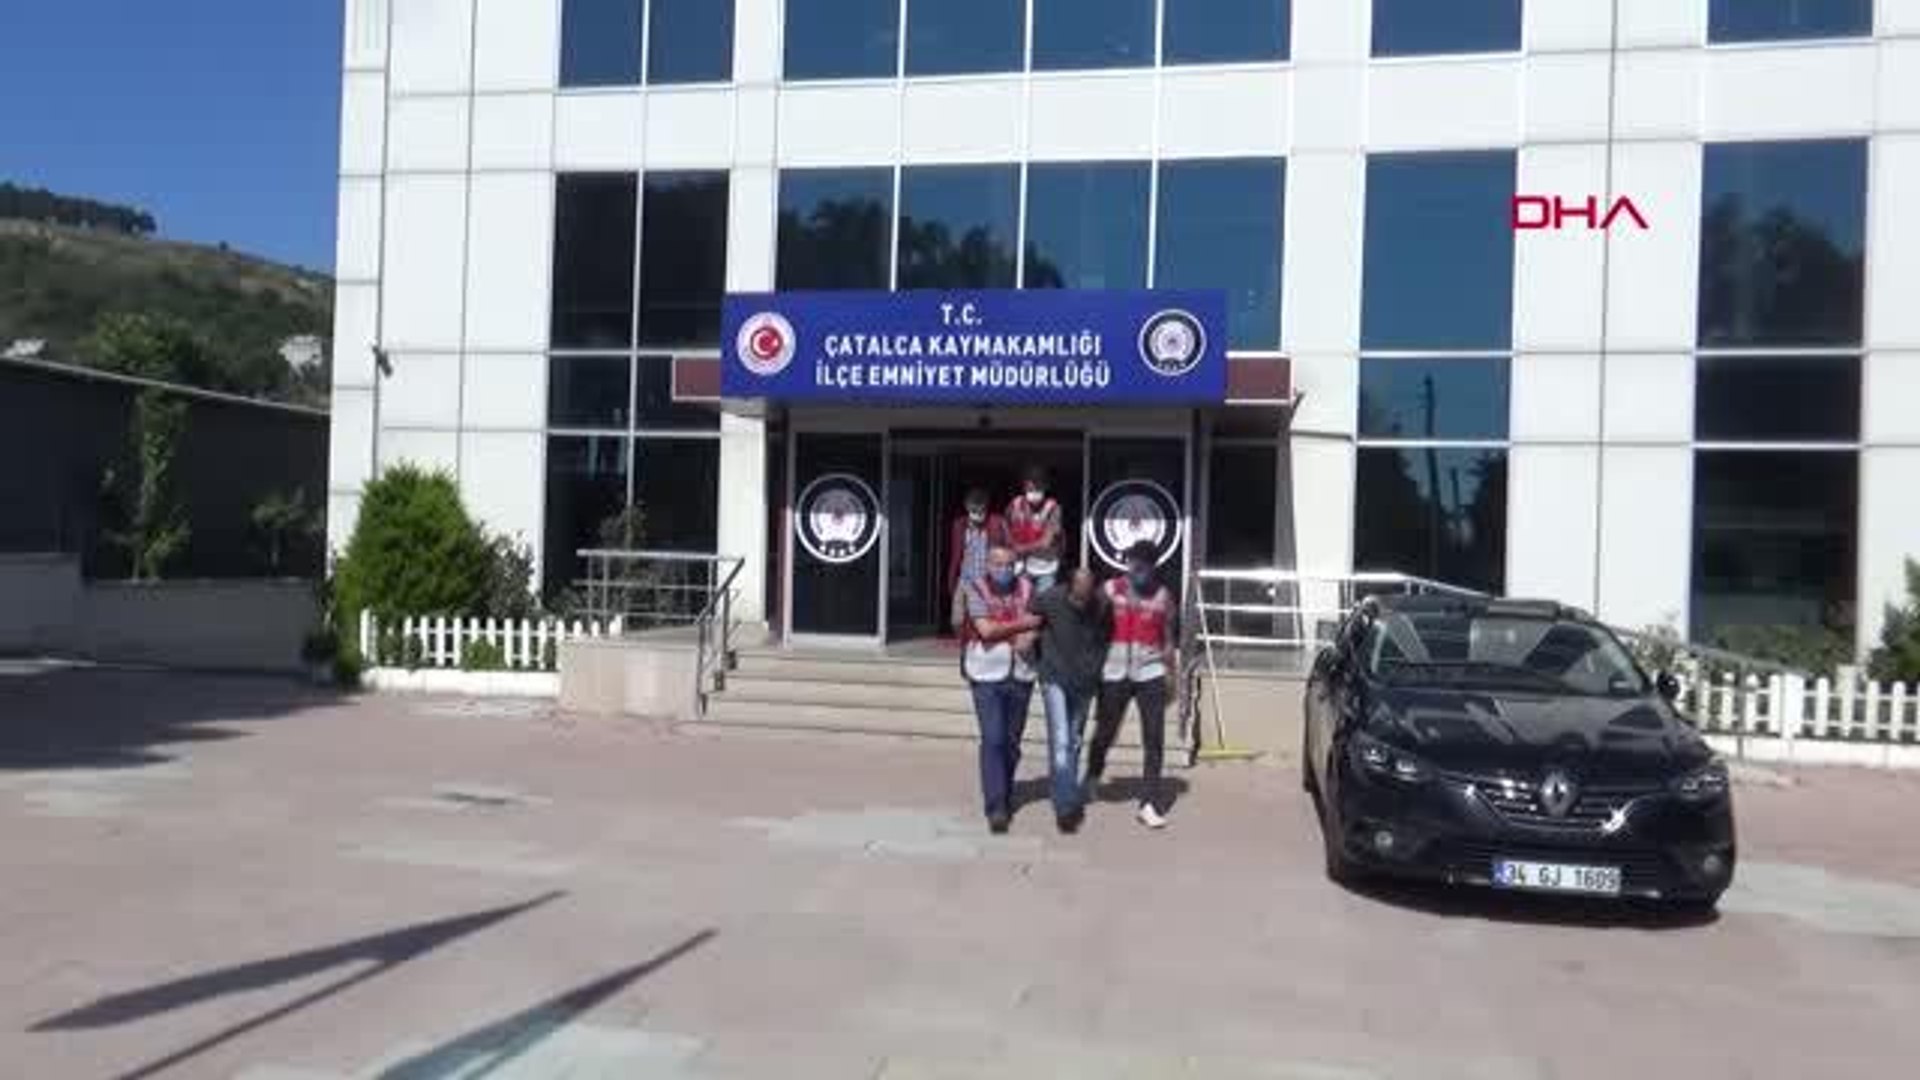 ÇATALCA'DA UYUŞTURUCU OPERASYONU 2 ŞÜPHELİ TUTUKLANDI - Dailymotion Video